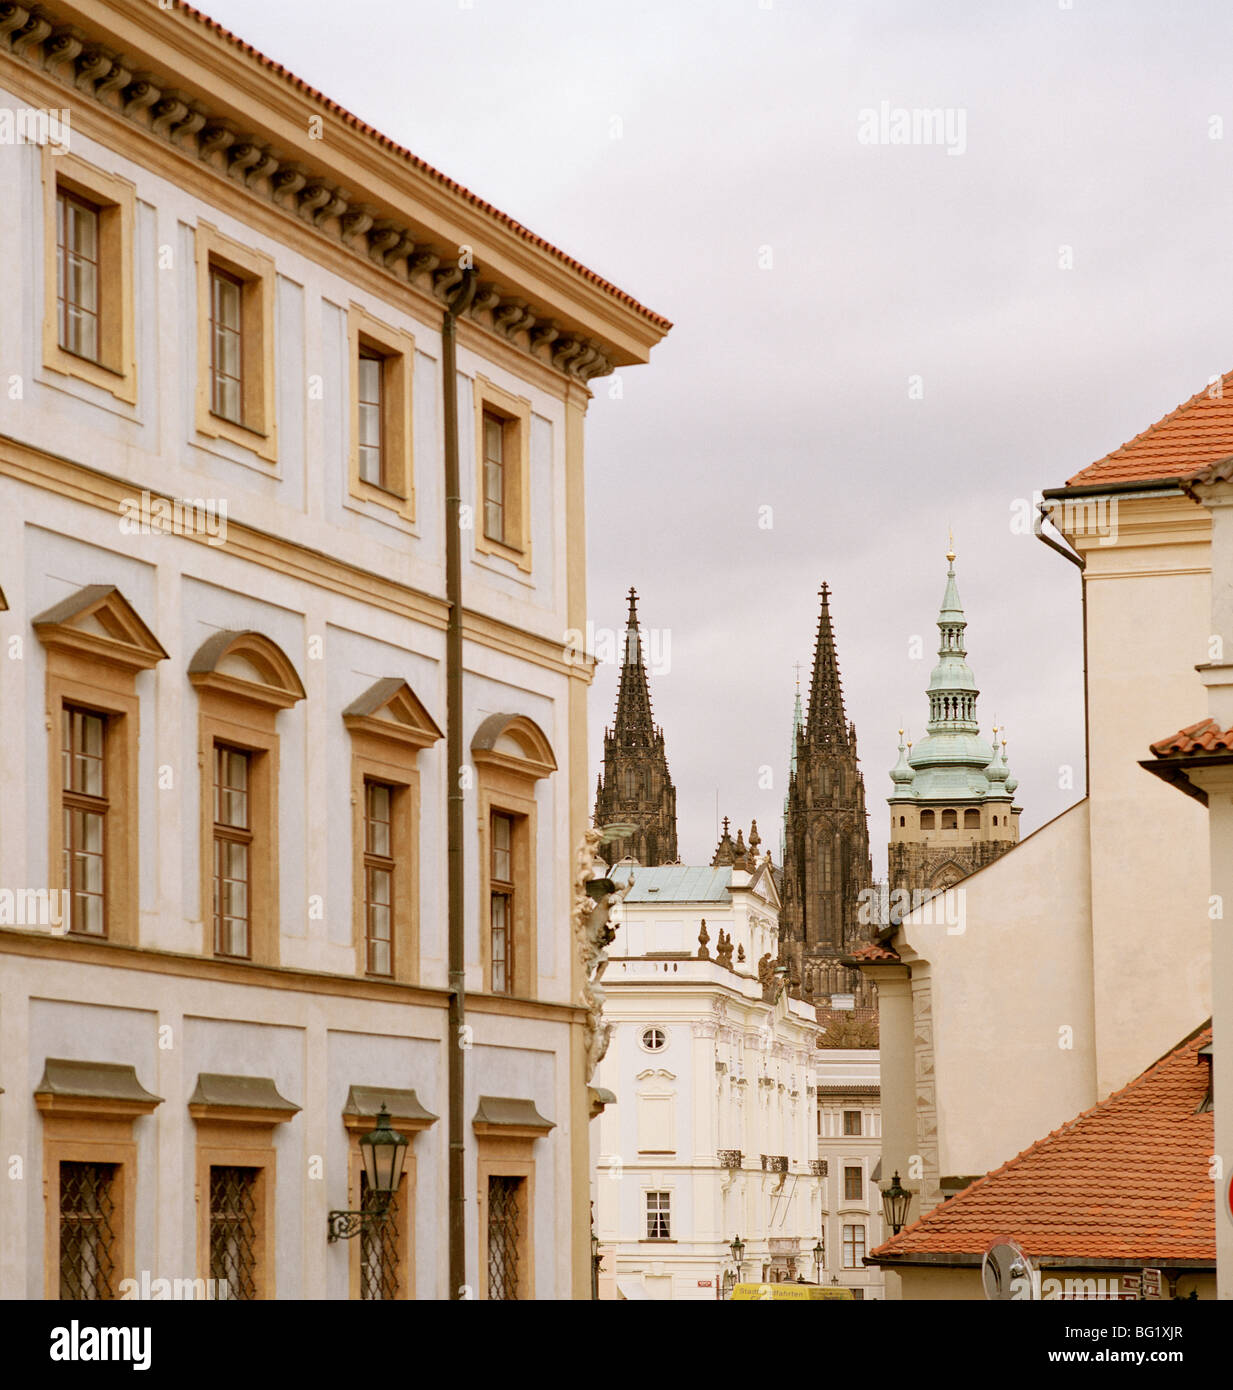 Welt zu reisen. Burgviertel Hradschin in der alten Stadt Prag in der Tschechischen Republik in Osteuropa. Kultur-Geschichte-Traveller-Fernweh Stockfoto